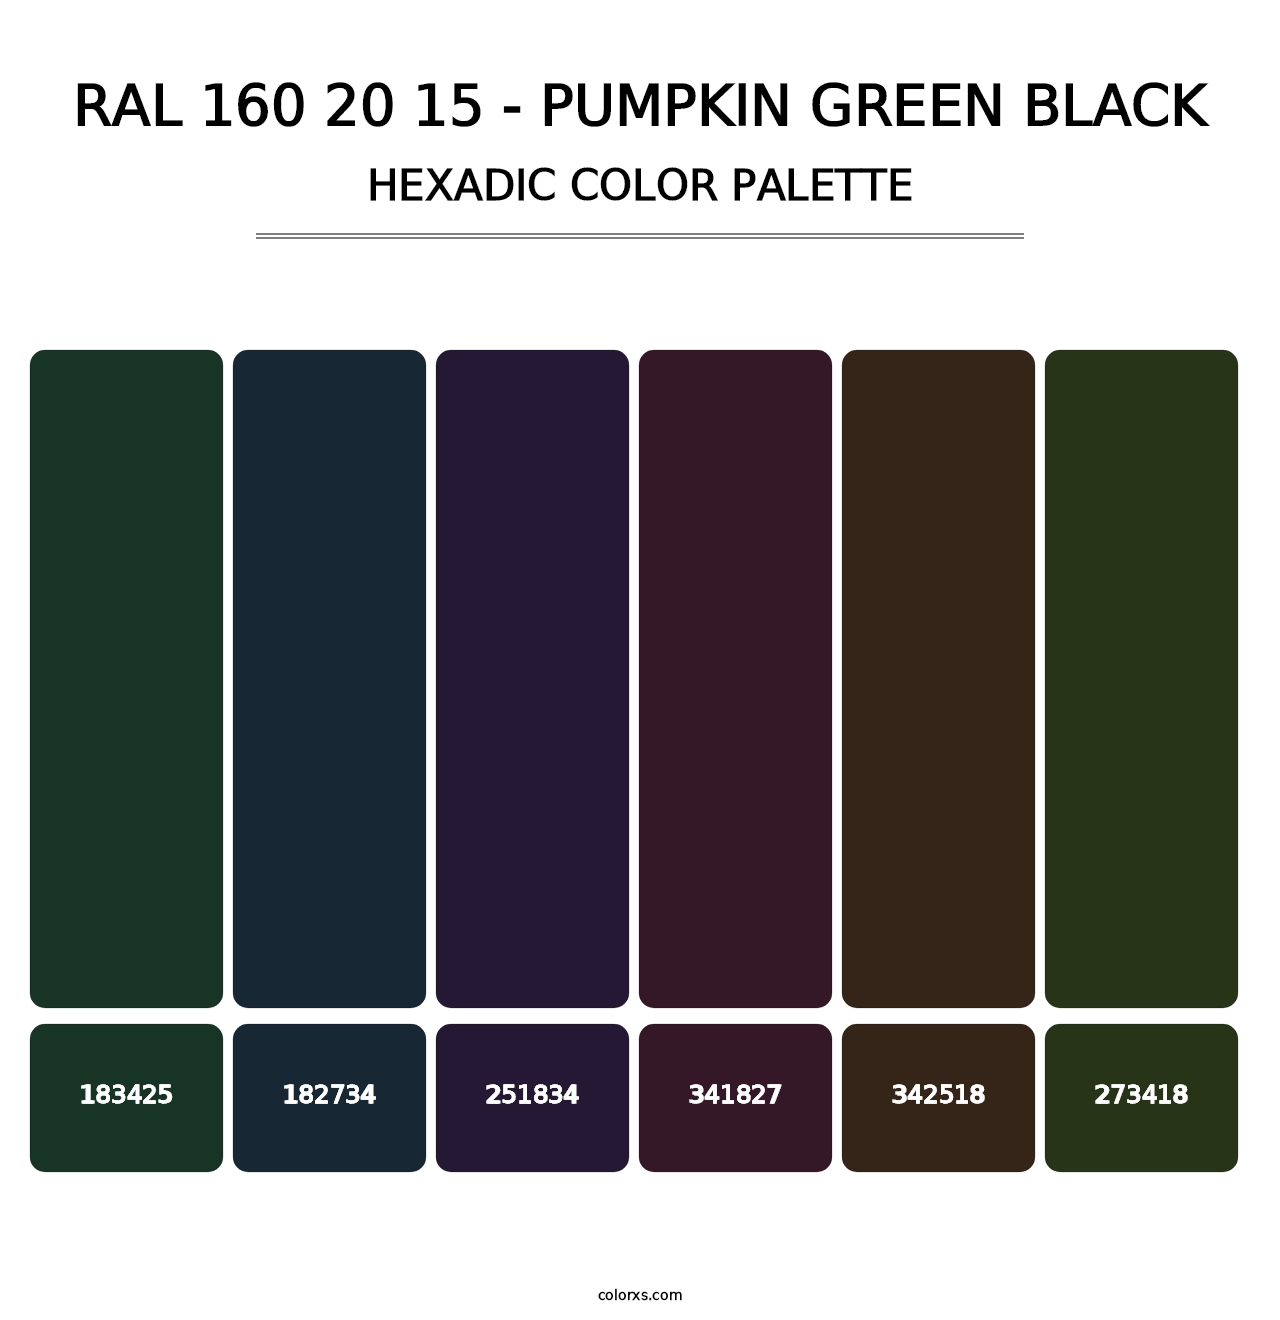 RAL 160 20 15 - Pumpkin Green Black - Hexadic Color Palette